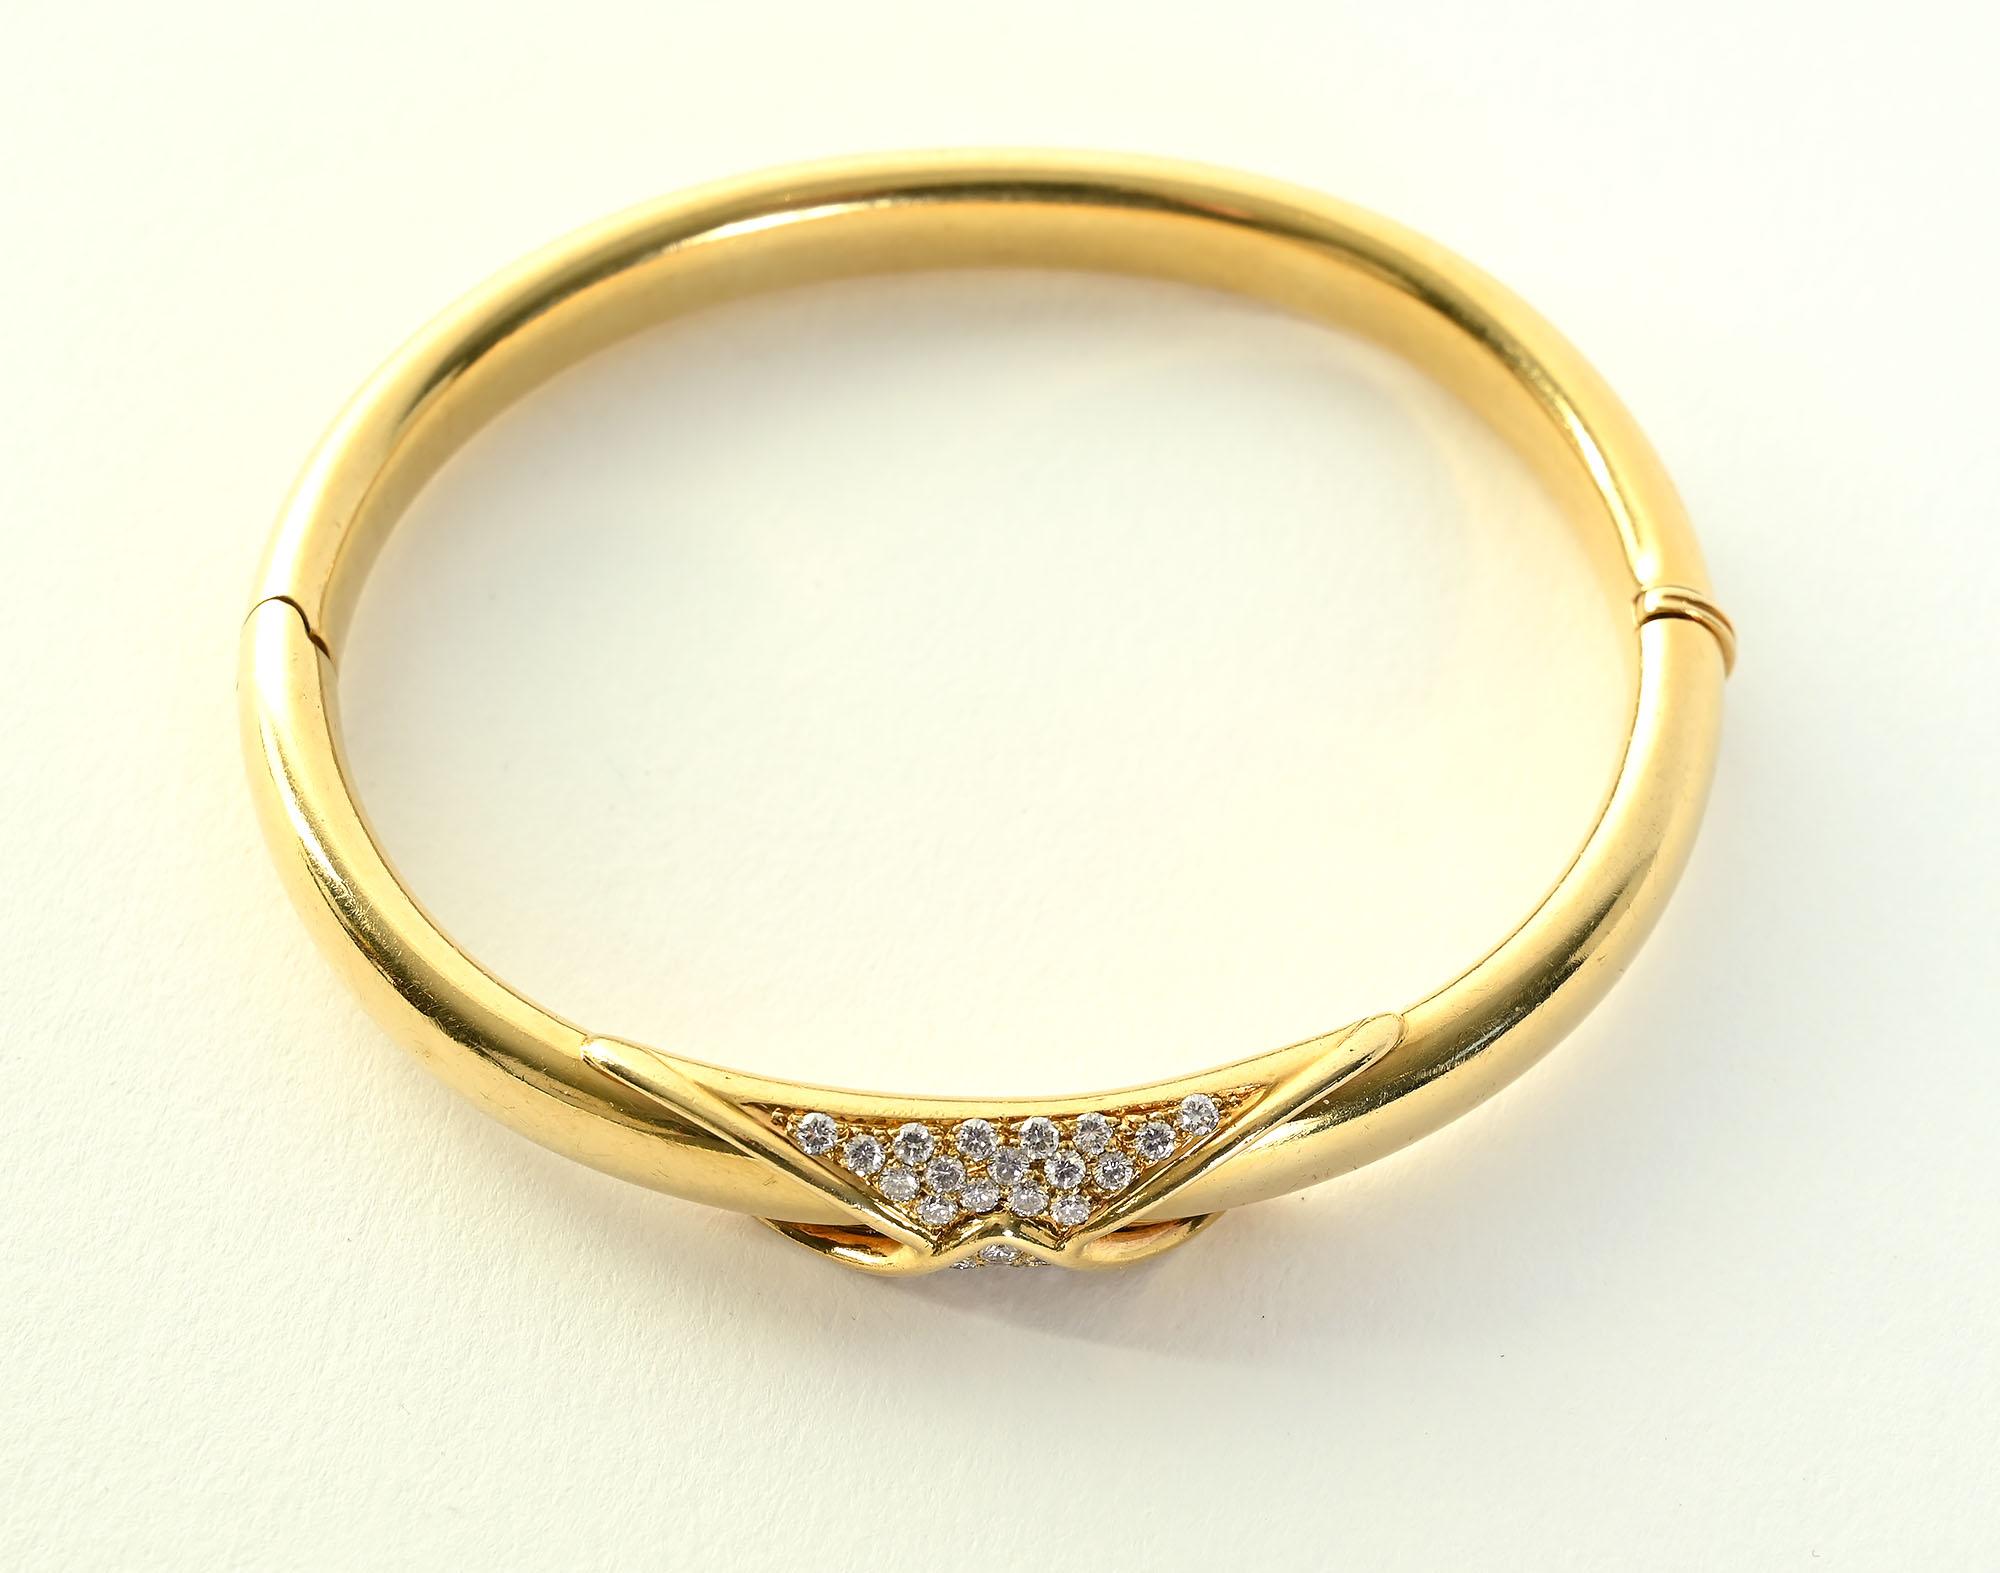 Bracelet à charnière en or 18 carats et diamants de Birks, le Tiffany du Canada. Le bracelet comporte 32 diamants d'un poids approximatif de 0,65 carat. Elles se replient gracieusement sur le centre du bracelet ovale. Le diamètre intérieur est de 2